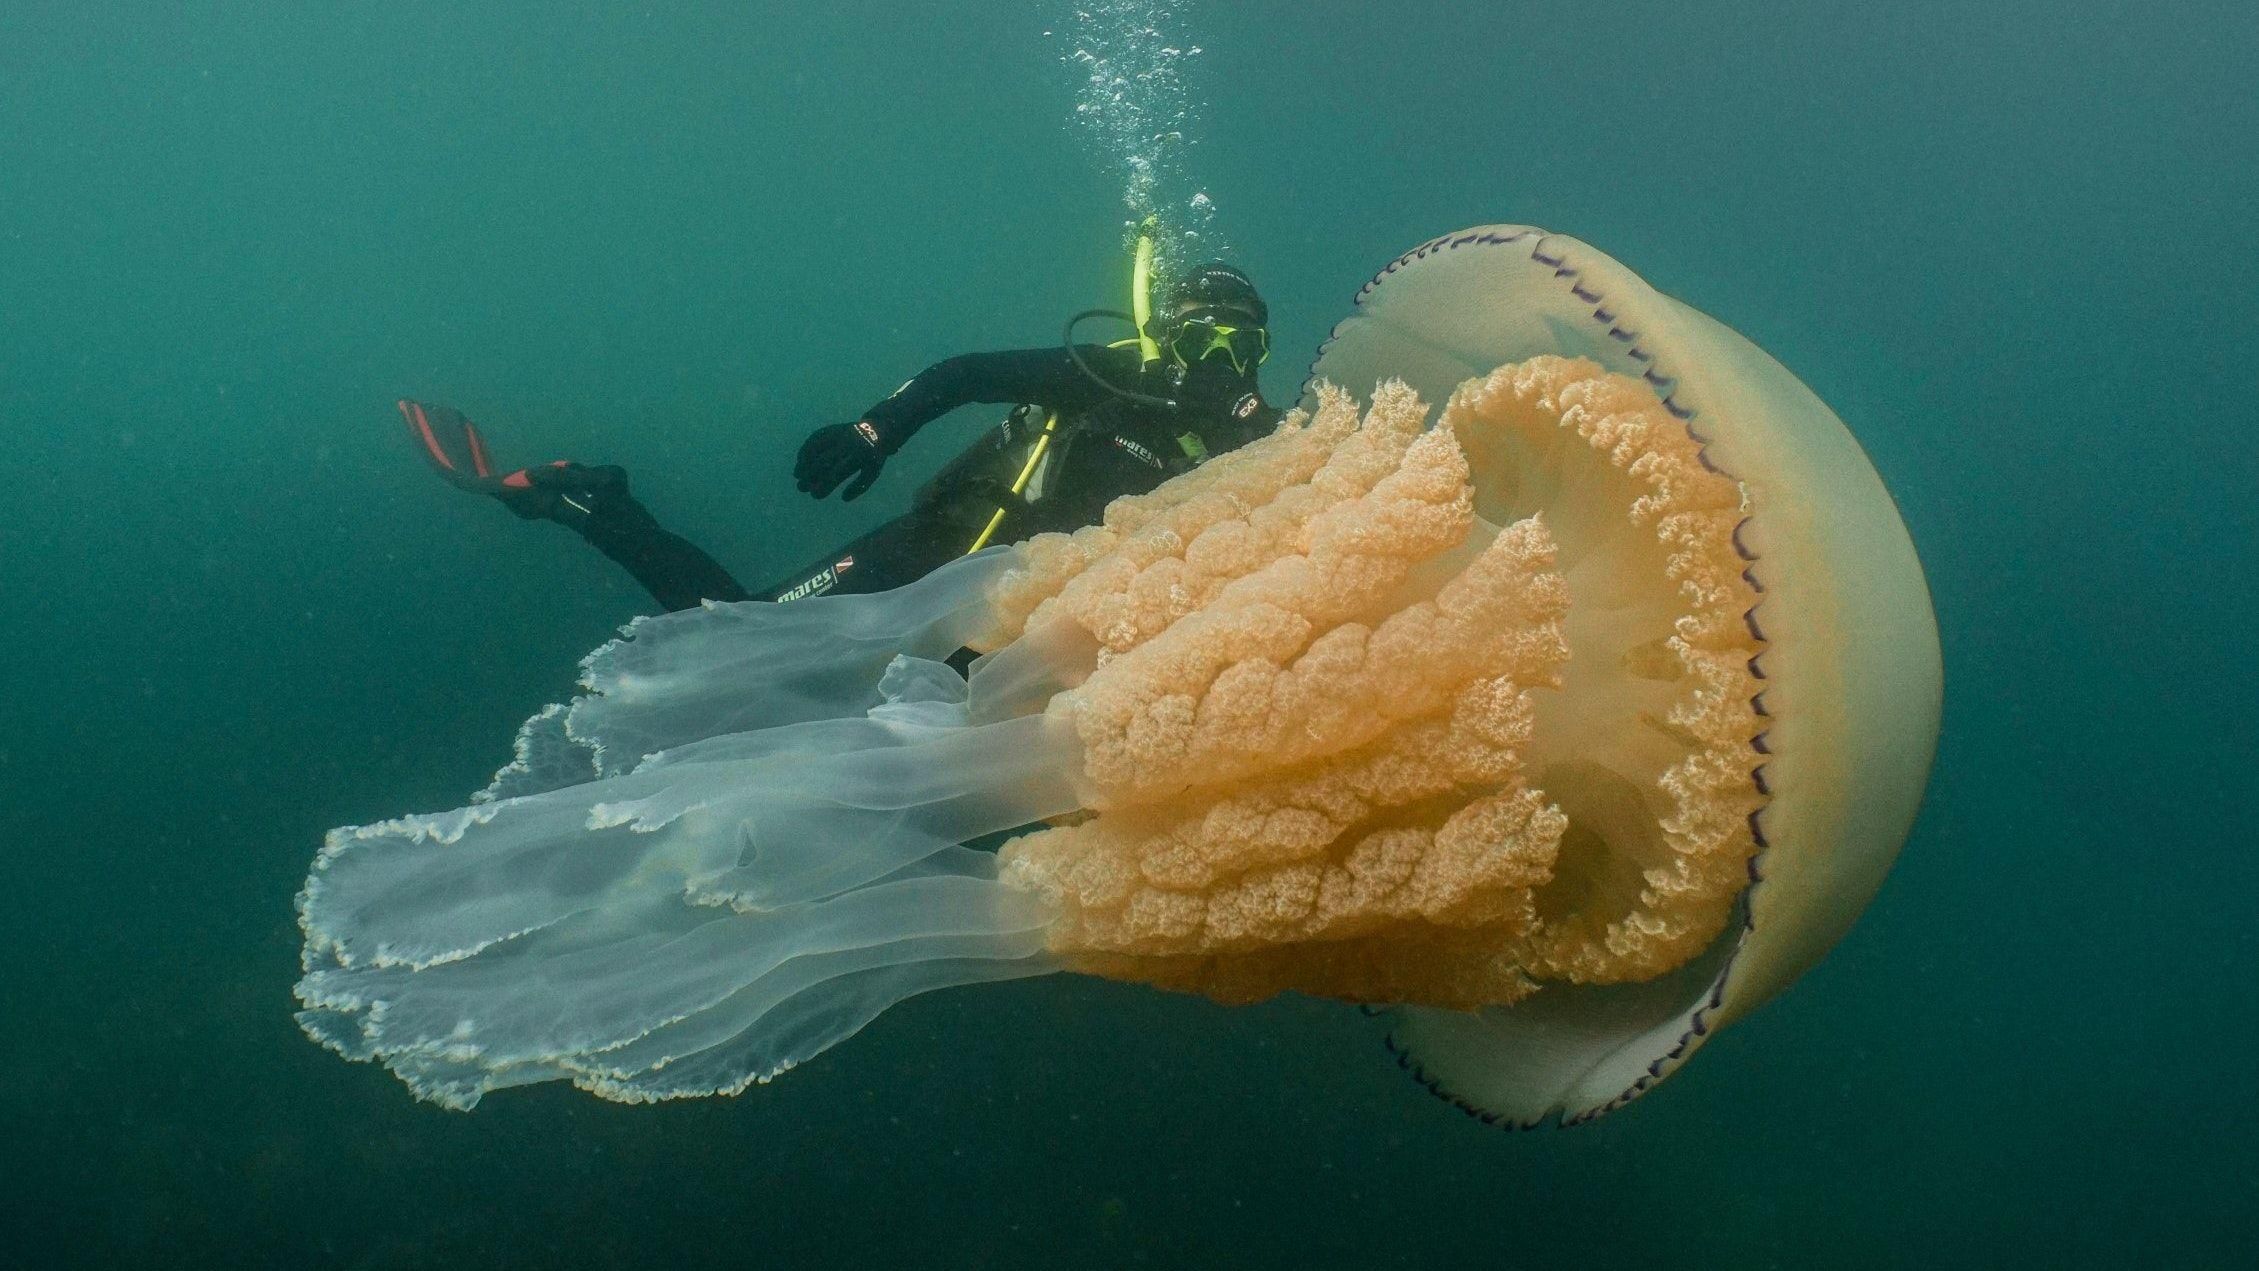 Гигантскую медузу размером с человека обнаружили в Британии: впечатляющие кадры